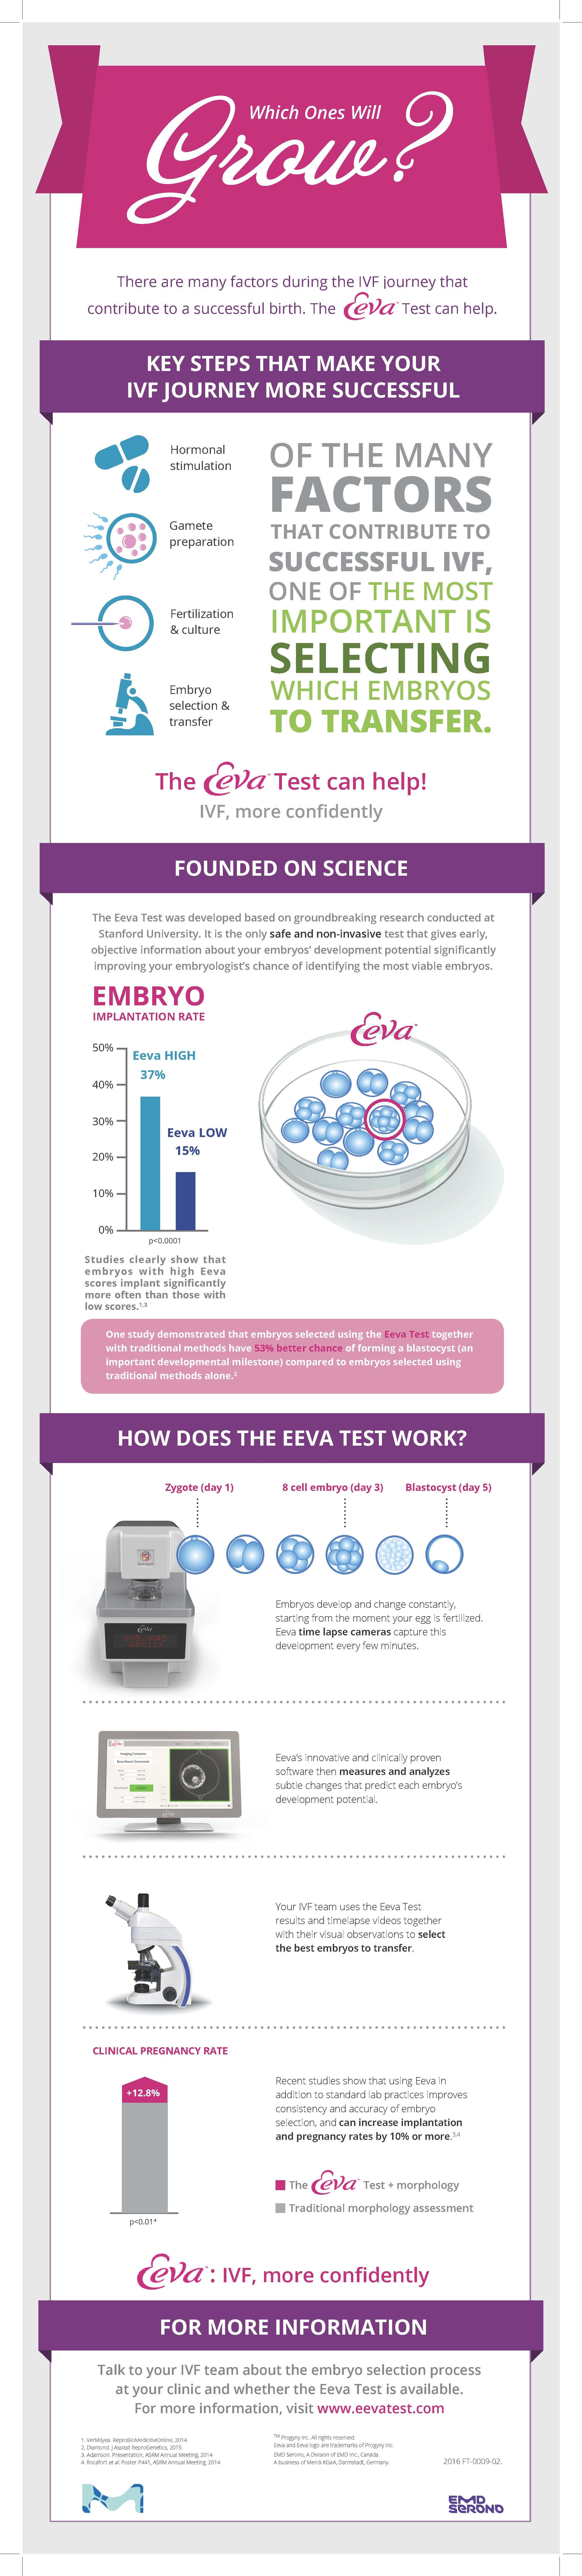 Infertility Treatment Options: The EEVA Test